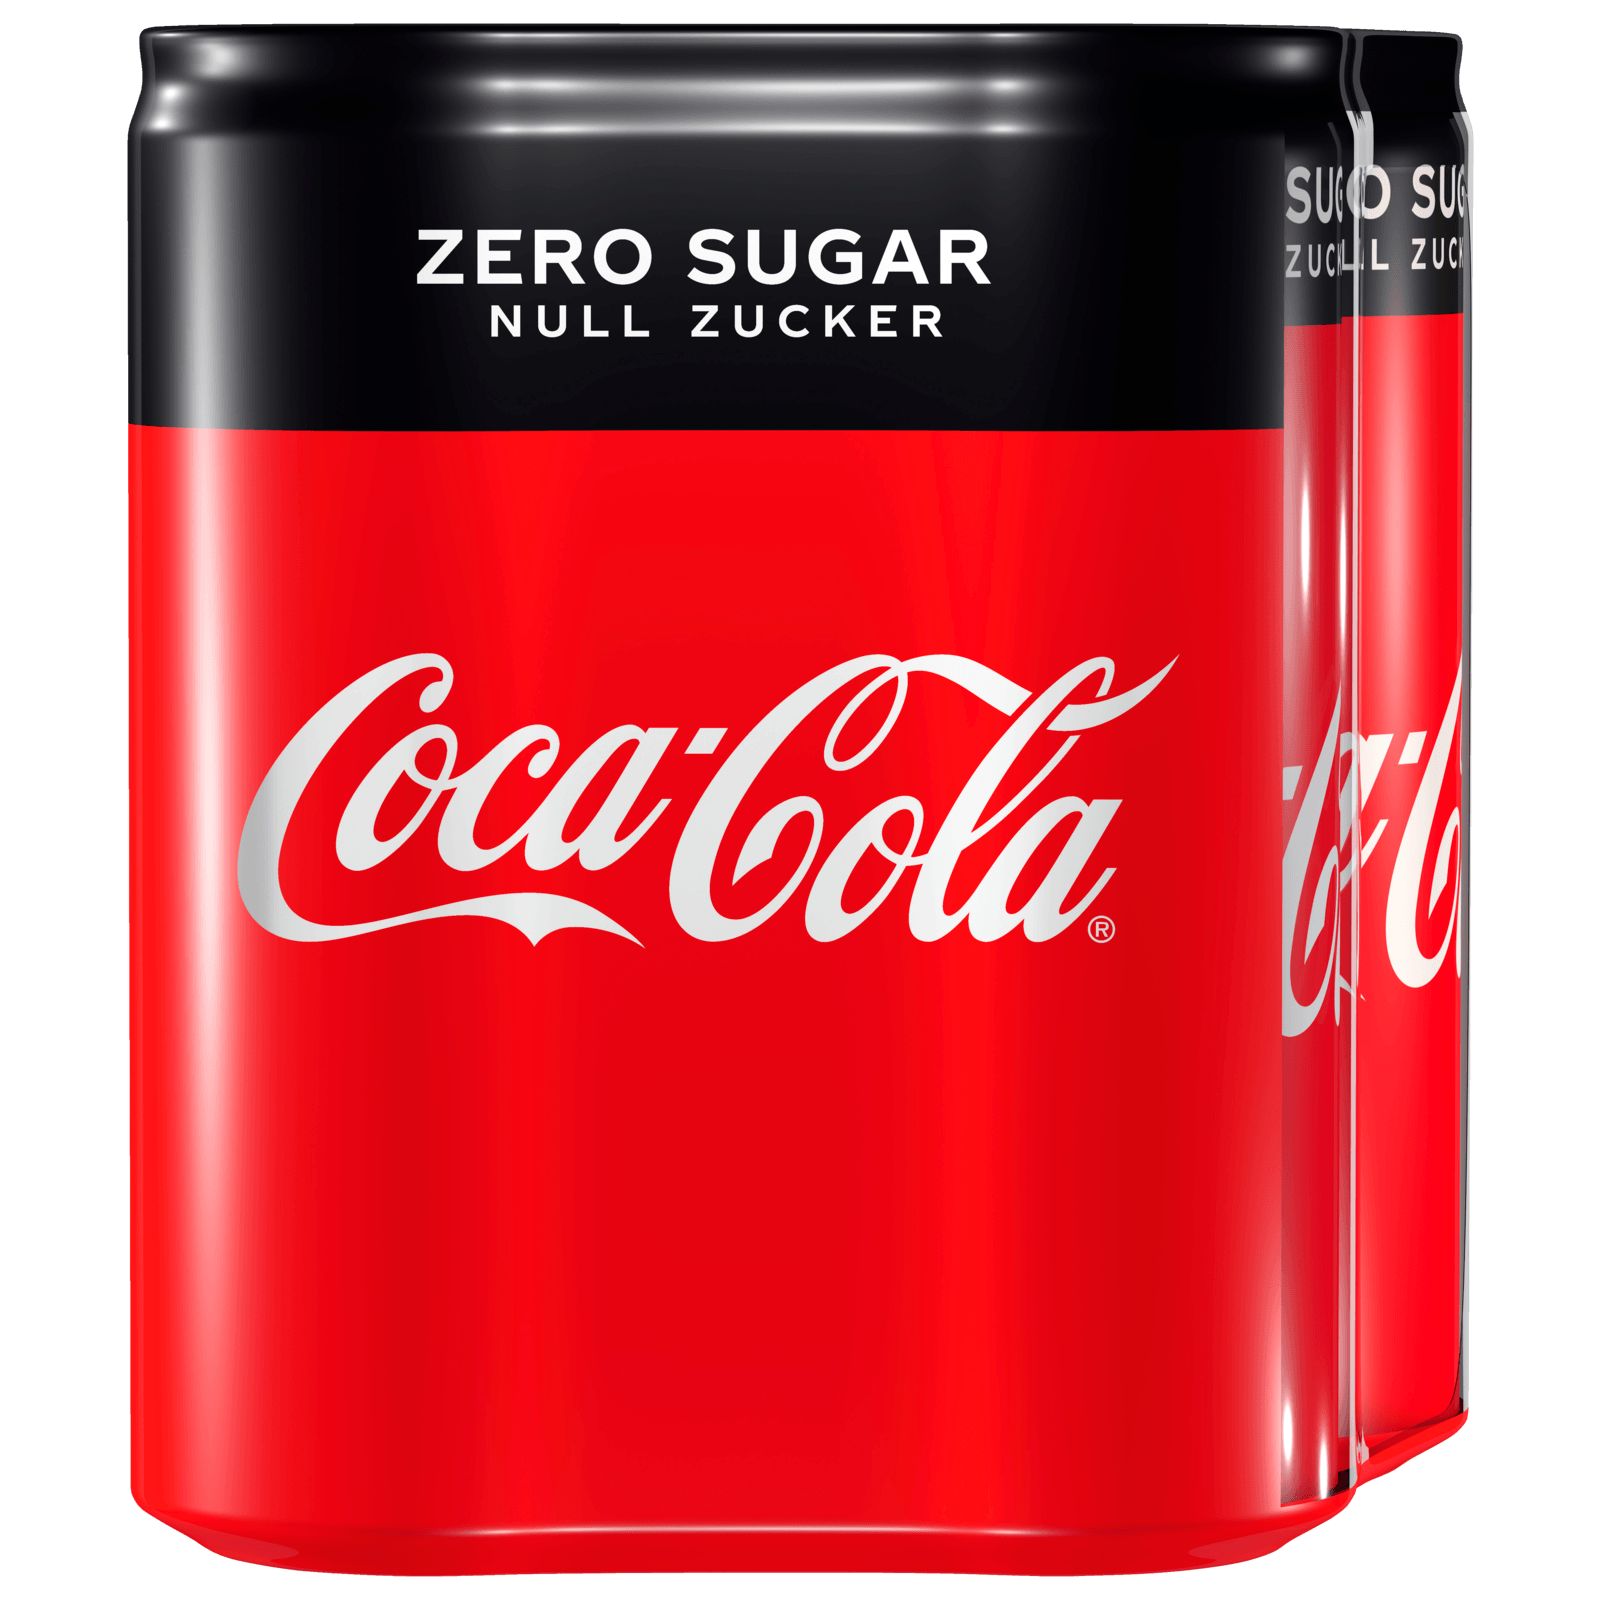 Ein Kunde wählt Mini-Dosen die neue Coke Zero Zucker in einem Supermarkt in  New York am Samstag, 7. Juli 2017. der Coca-cola Co. vor kurzem Coke Zero  Zucker eingeführt, ein neuentwickeltes Version